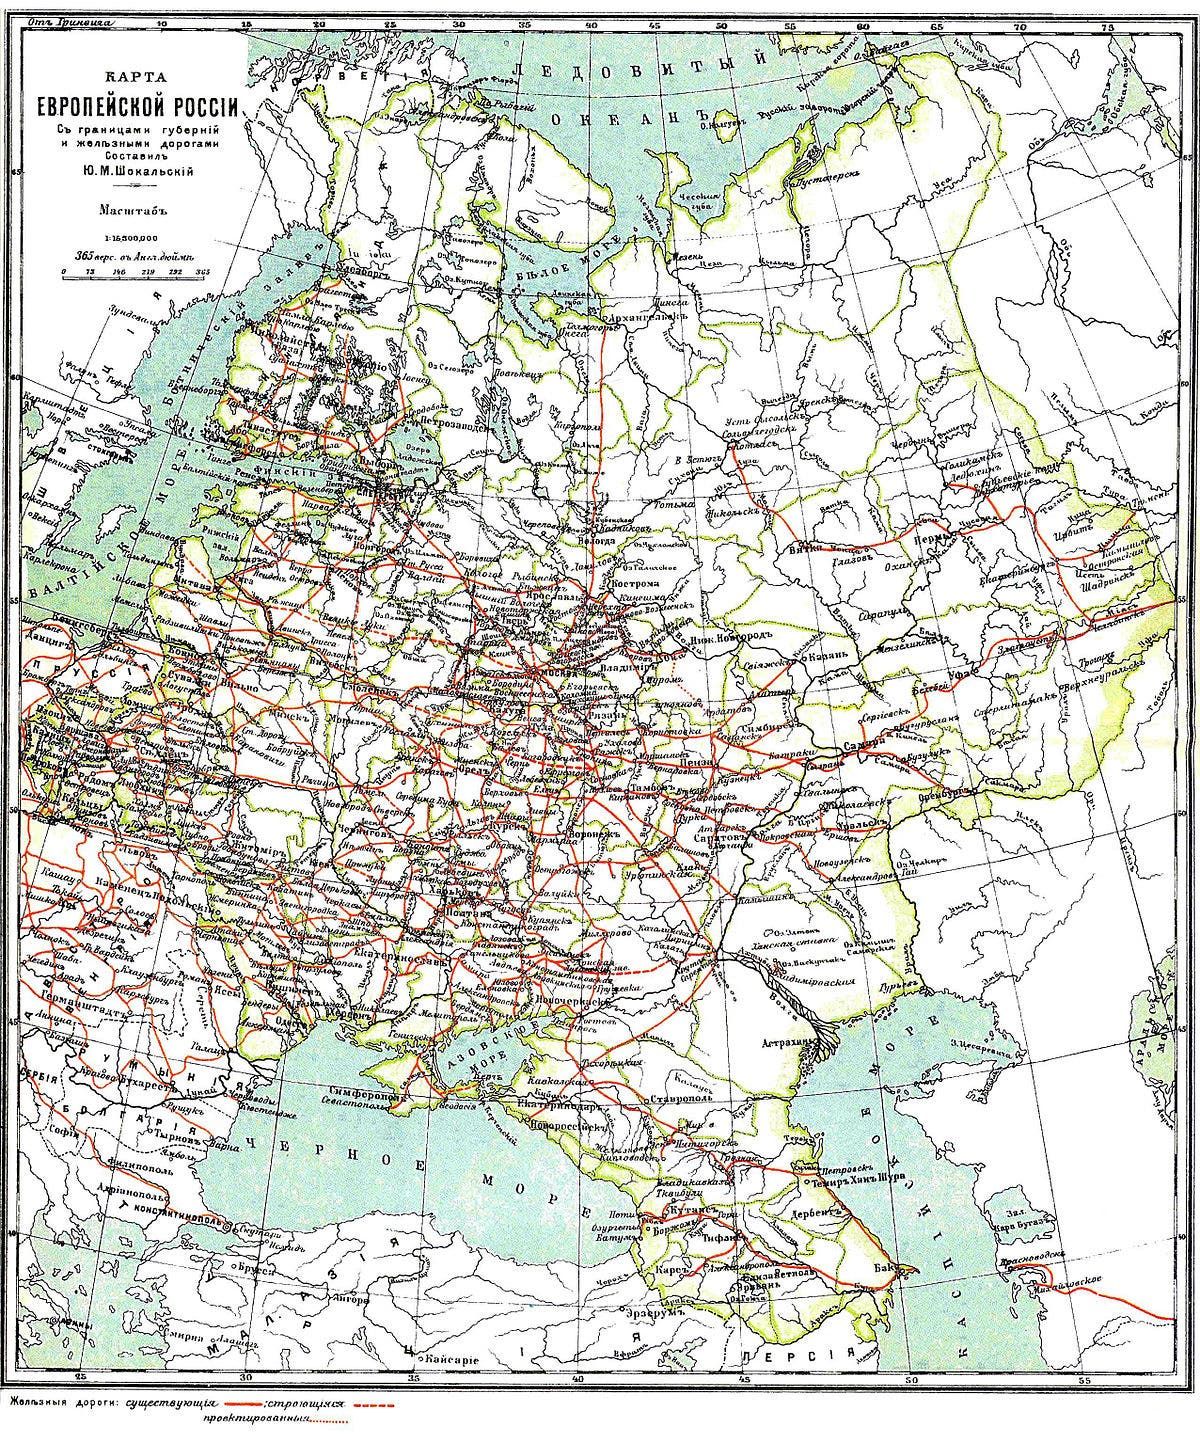 خريطة تبرز توزع خطوط السكك الحديدية بروسيا مطلع القرن 20